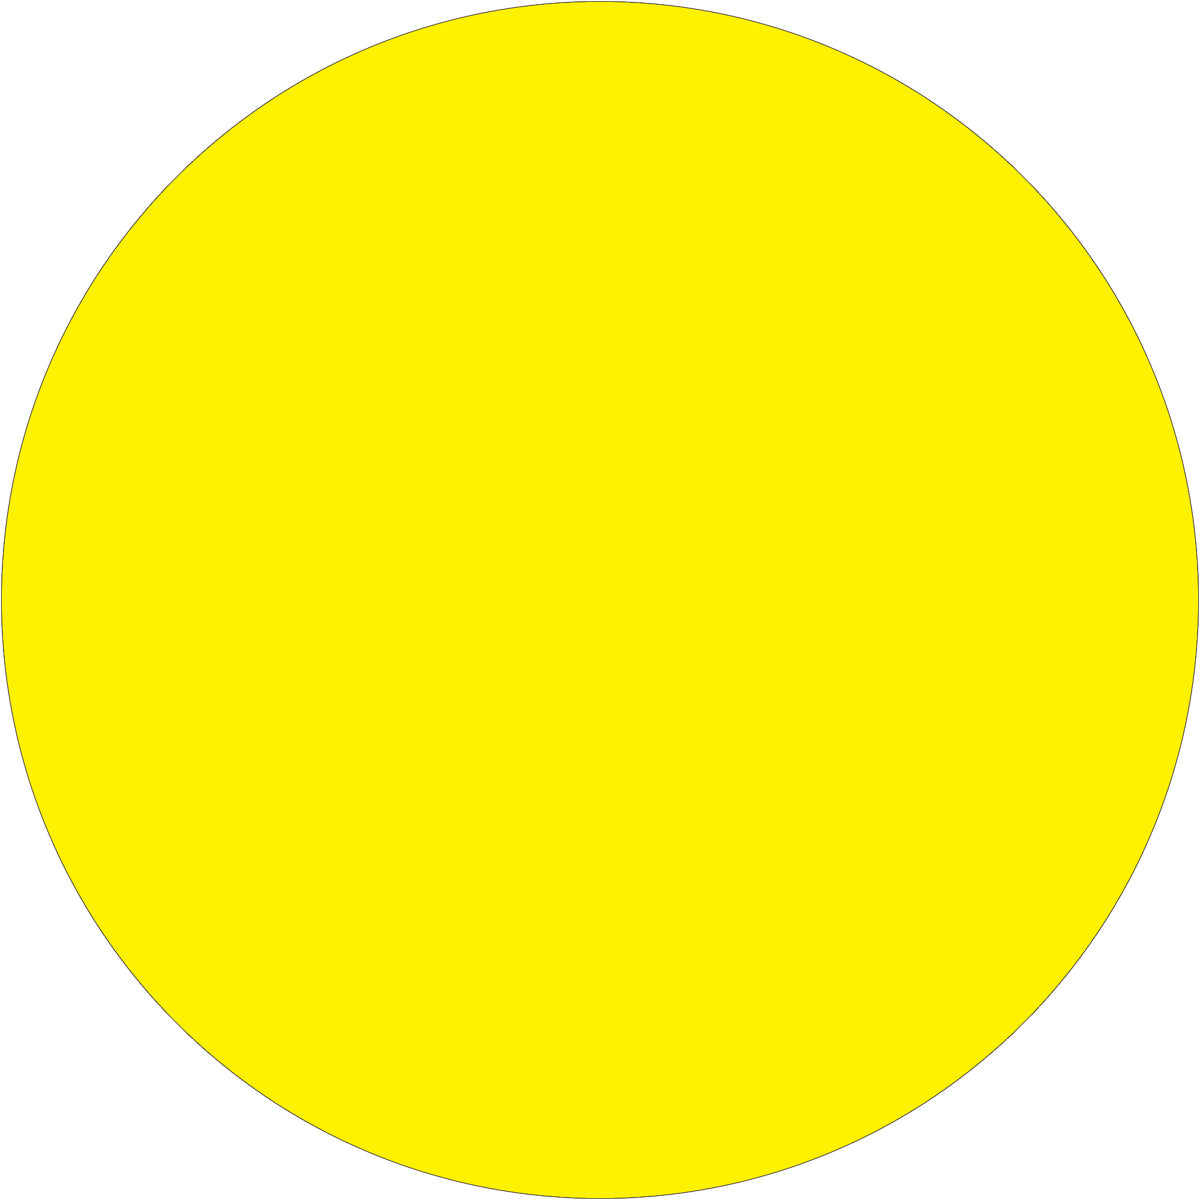 Круг желтый лист. Желтые кружочки. Желтый кружок. Желтый круг на белом фоне. Желтый круг для карточек.